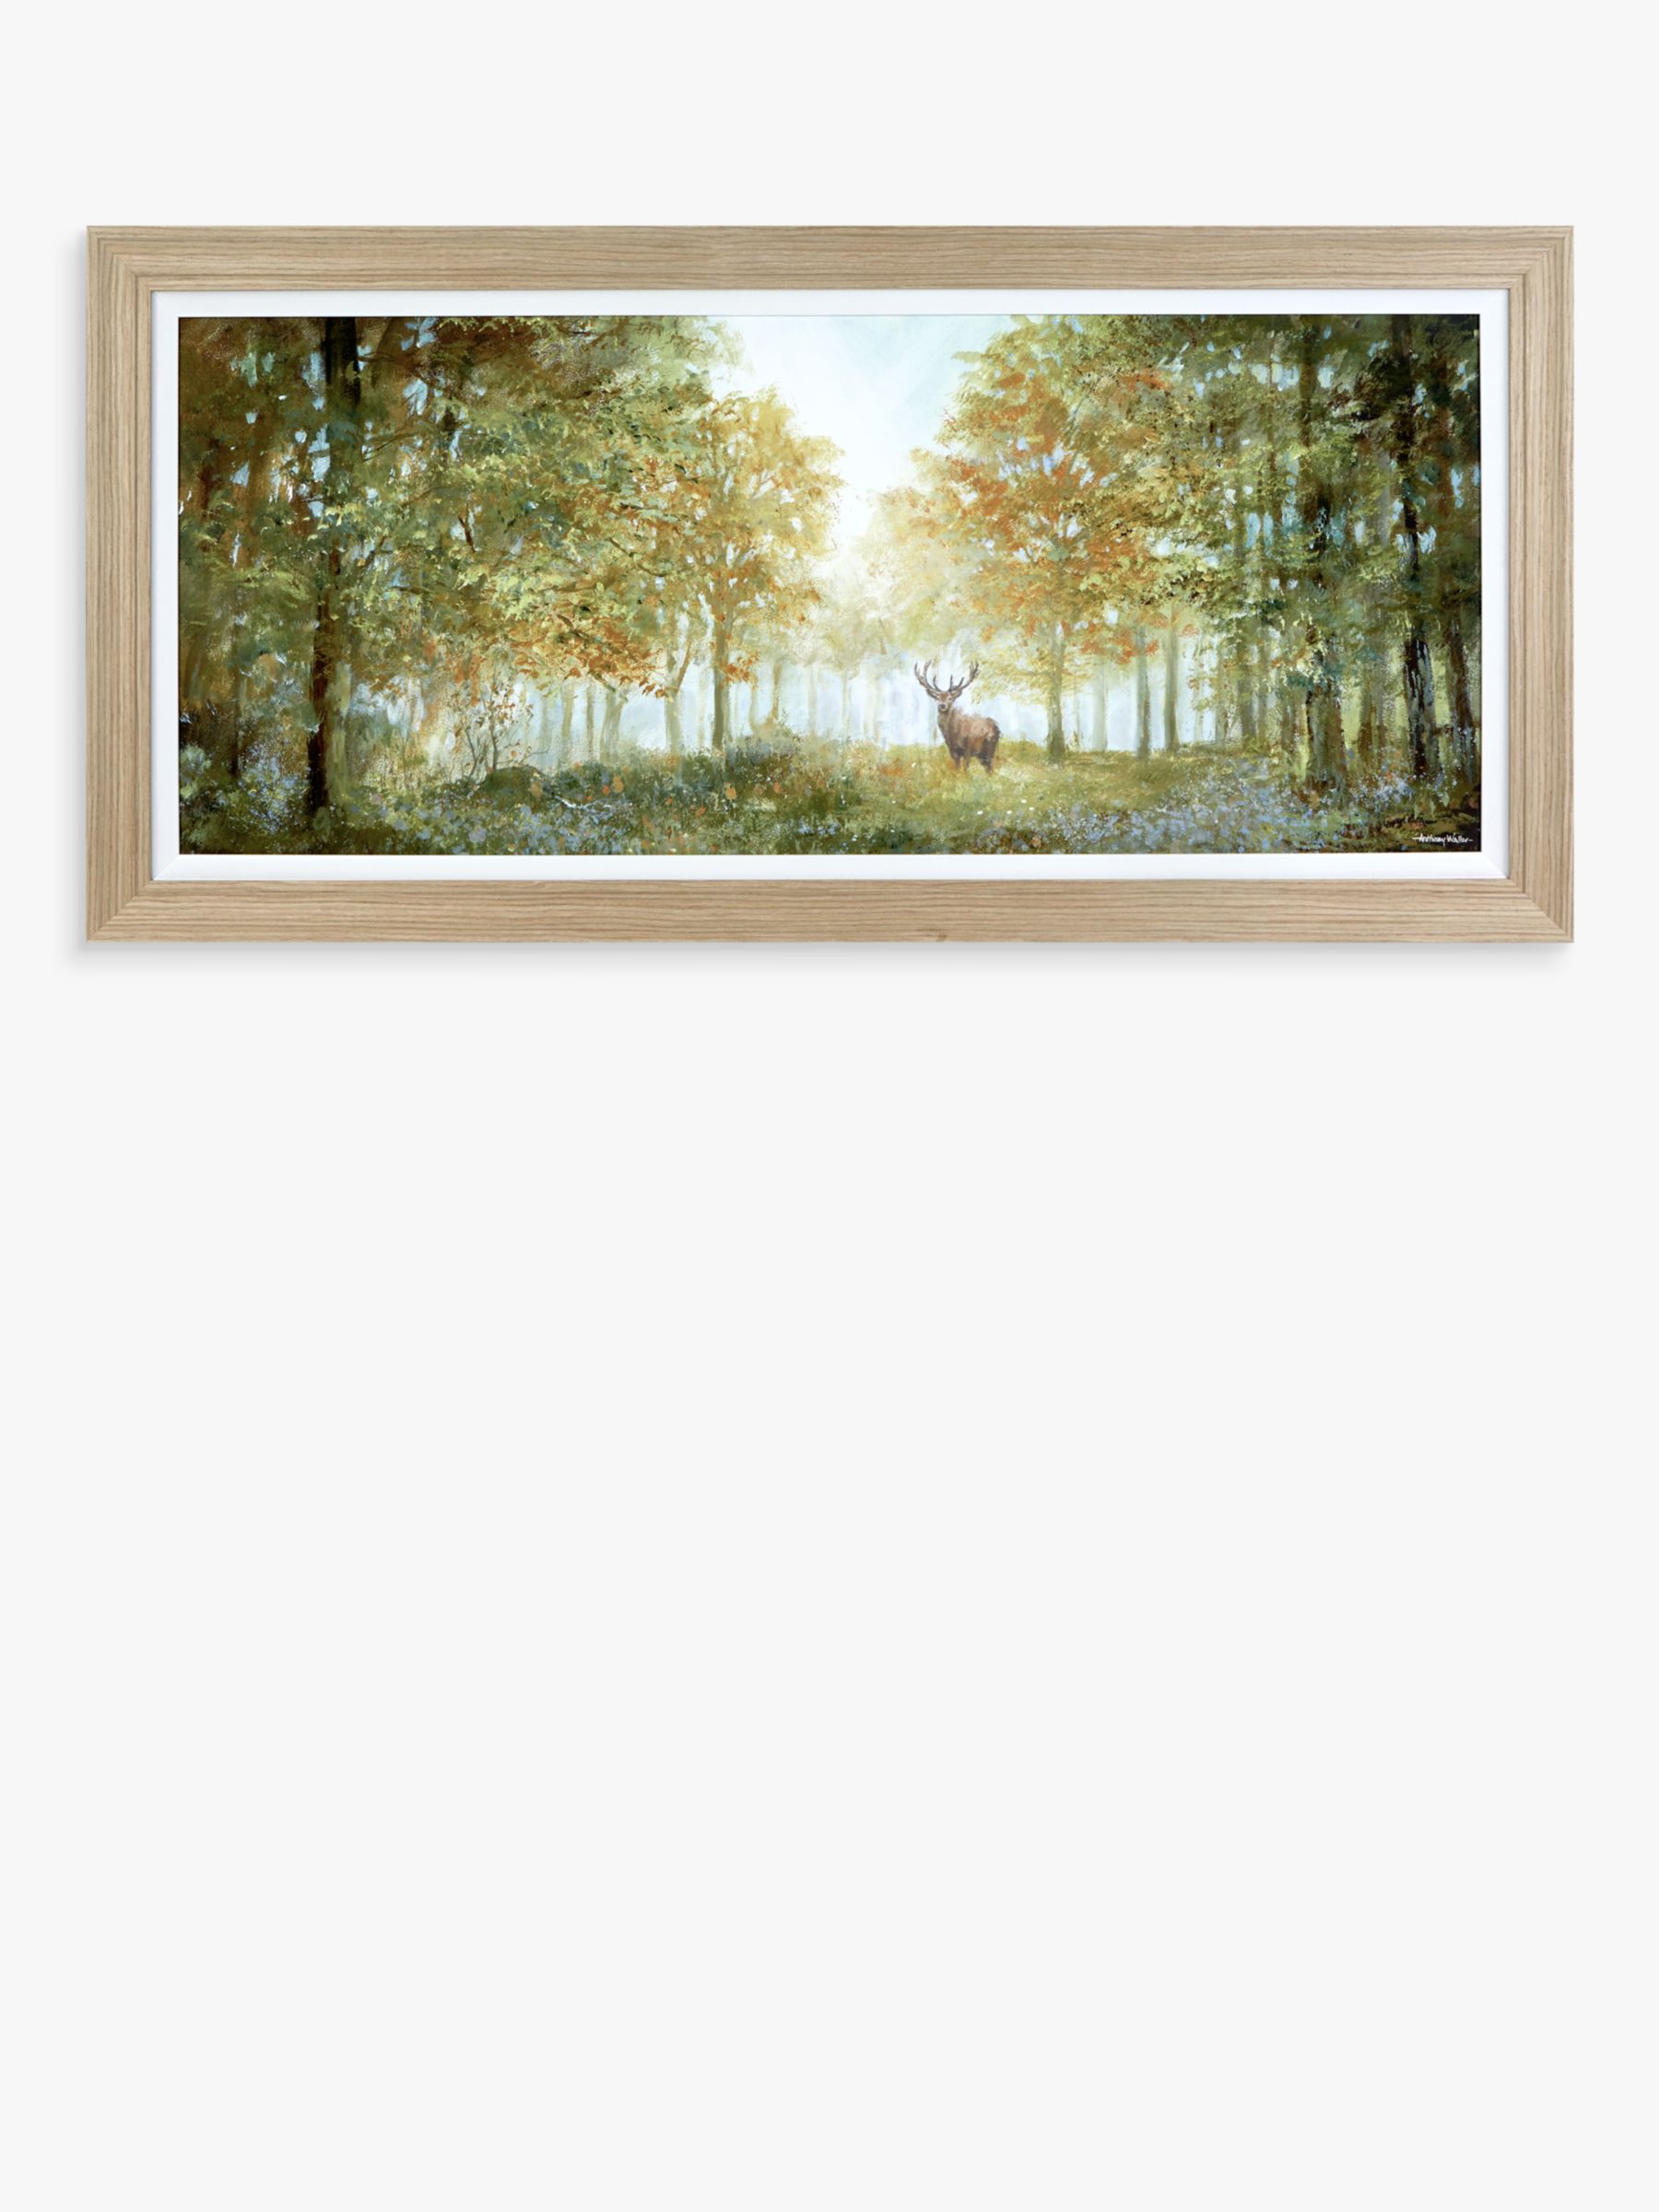 Mike Shepherd 'Morning Woodland' Framed Print, 52 X 107cm